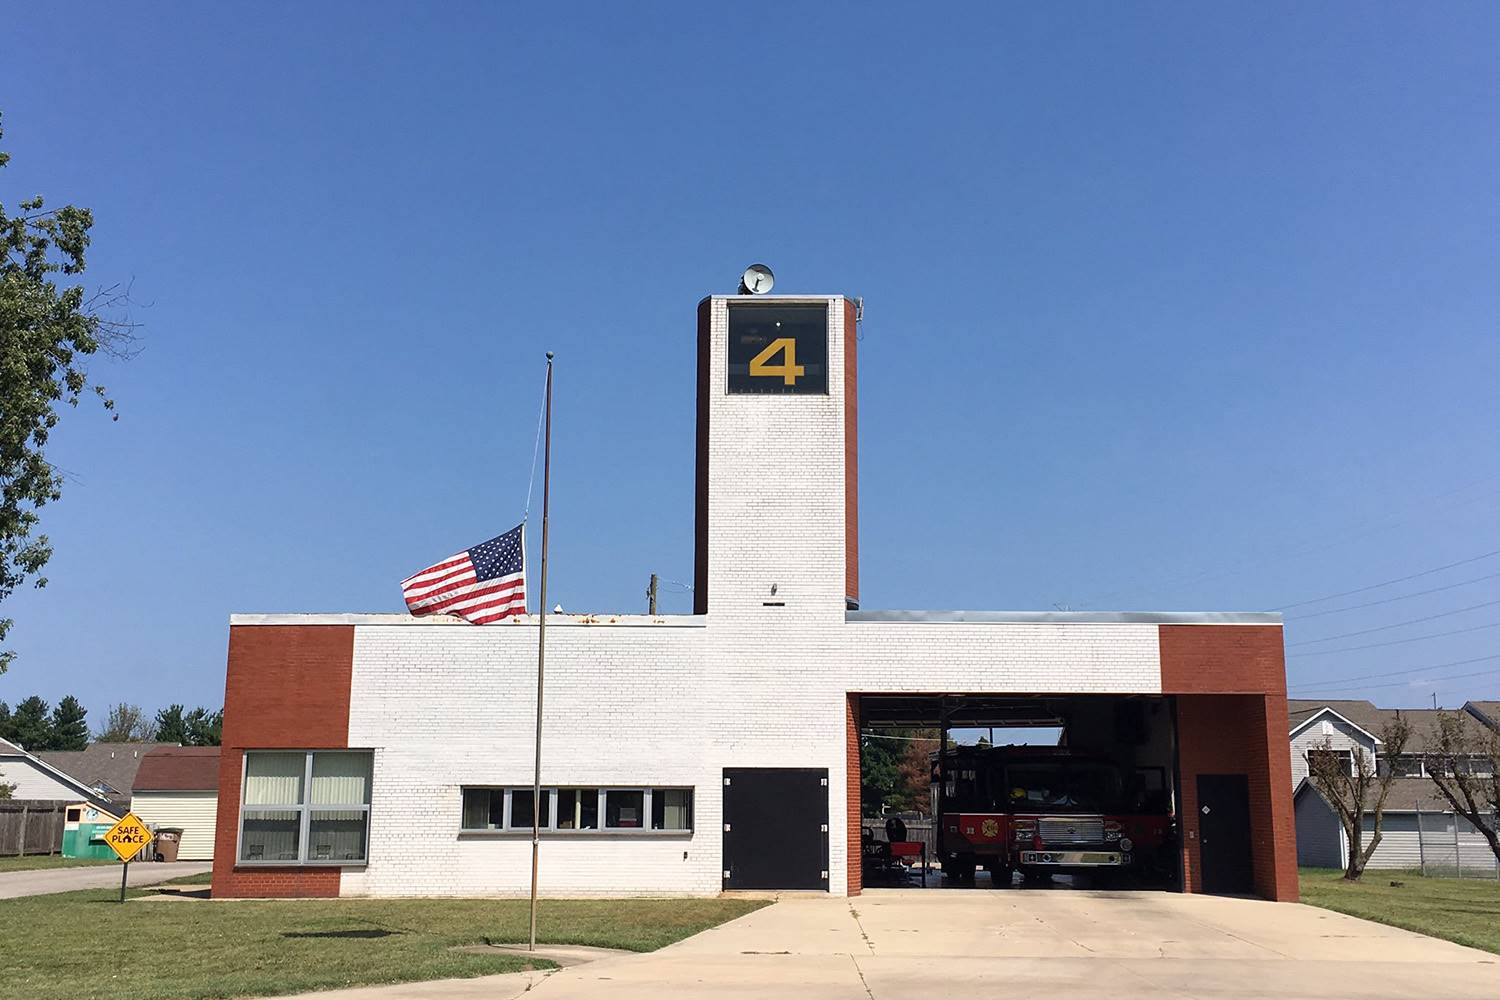 Estación de bomberos nº 4, Columbus (EE.UU.), 1968
